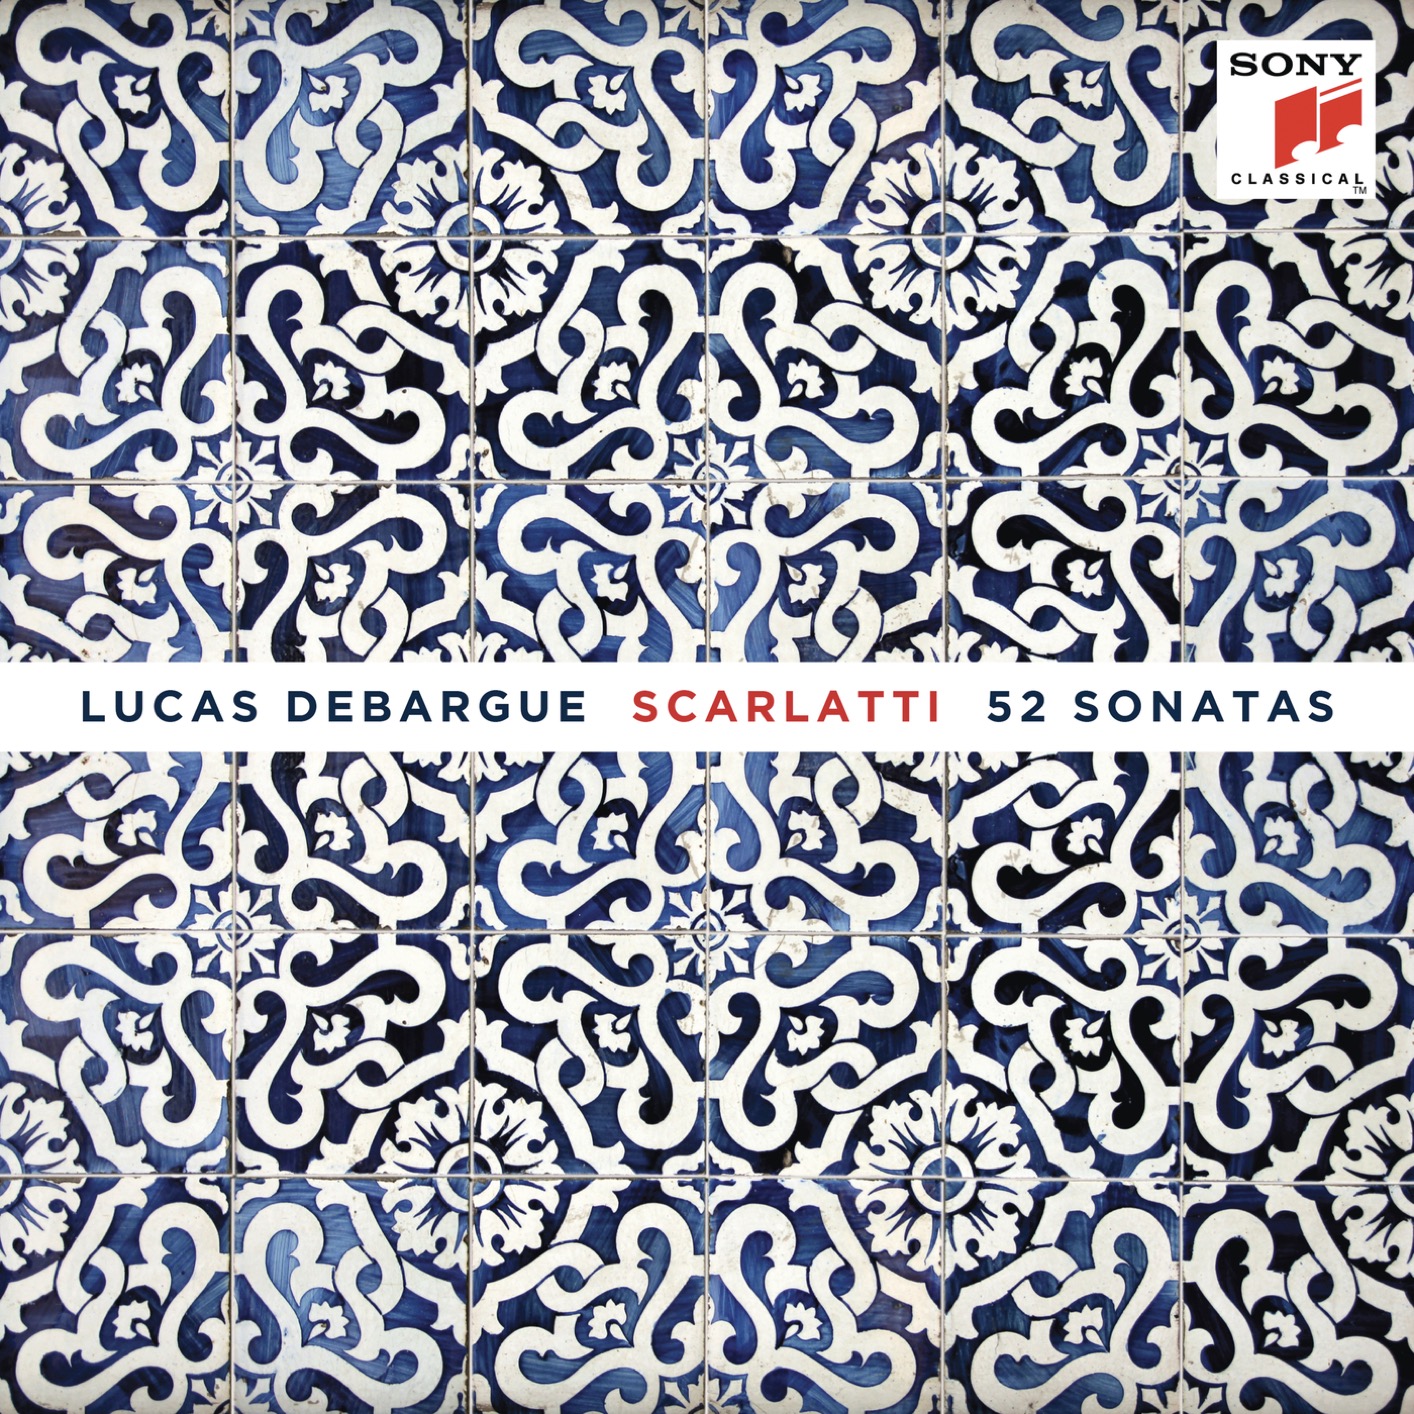 Lucas Debargue - Scarlatti: 52 Sonatas (2019) [FLAC 24bit/192kHz]